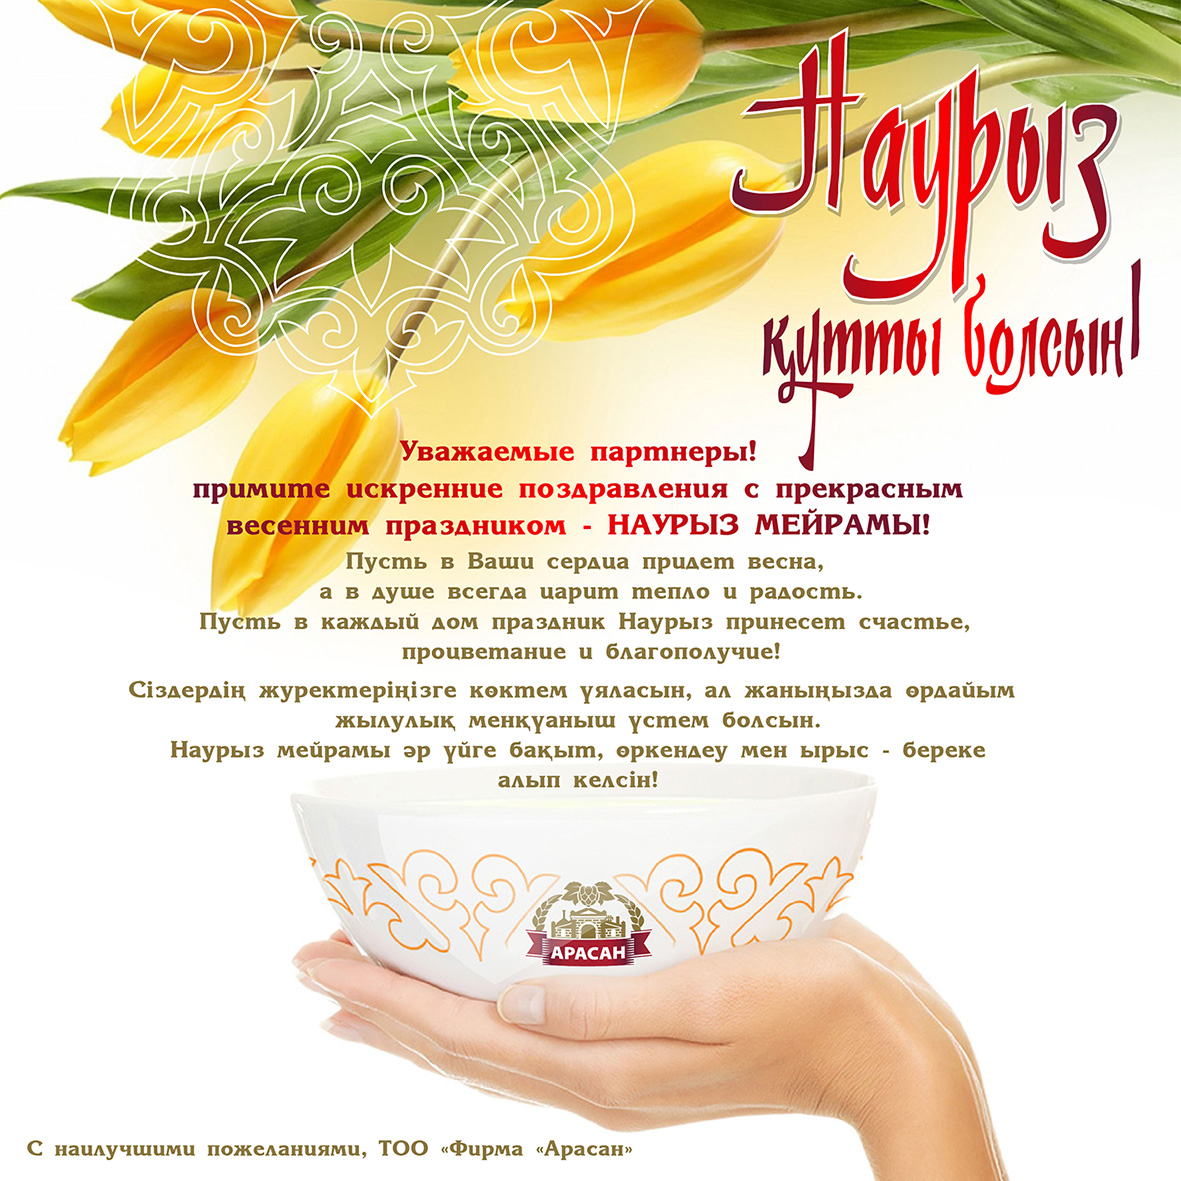 Открытки с наурызом на русском языке поздравления. Поздравление с наурузлм. Наурыз открытки. Поздравление гэнаурыз. Наурыз открытки с поздравлениями.